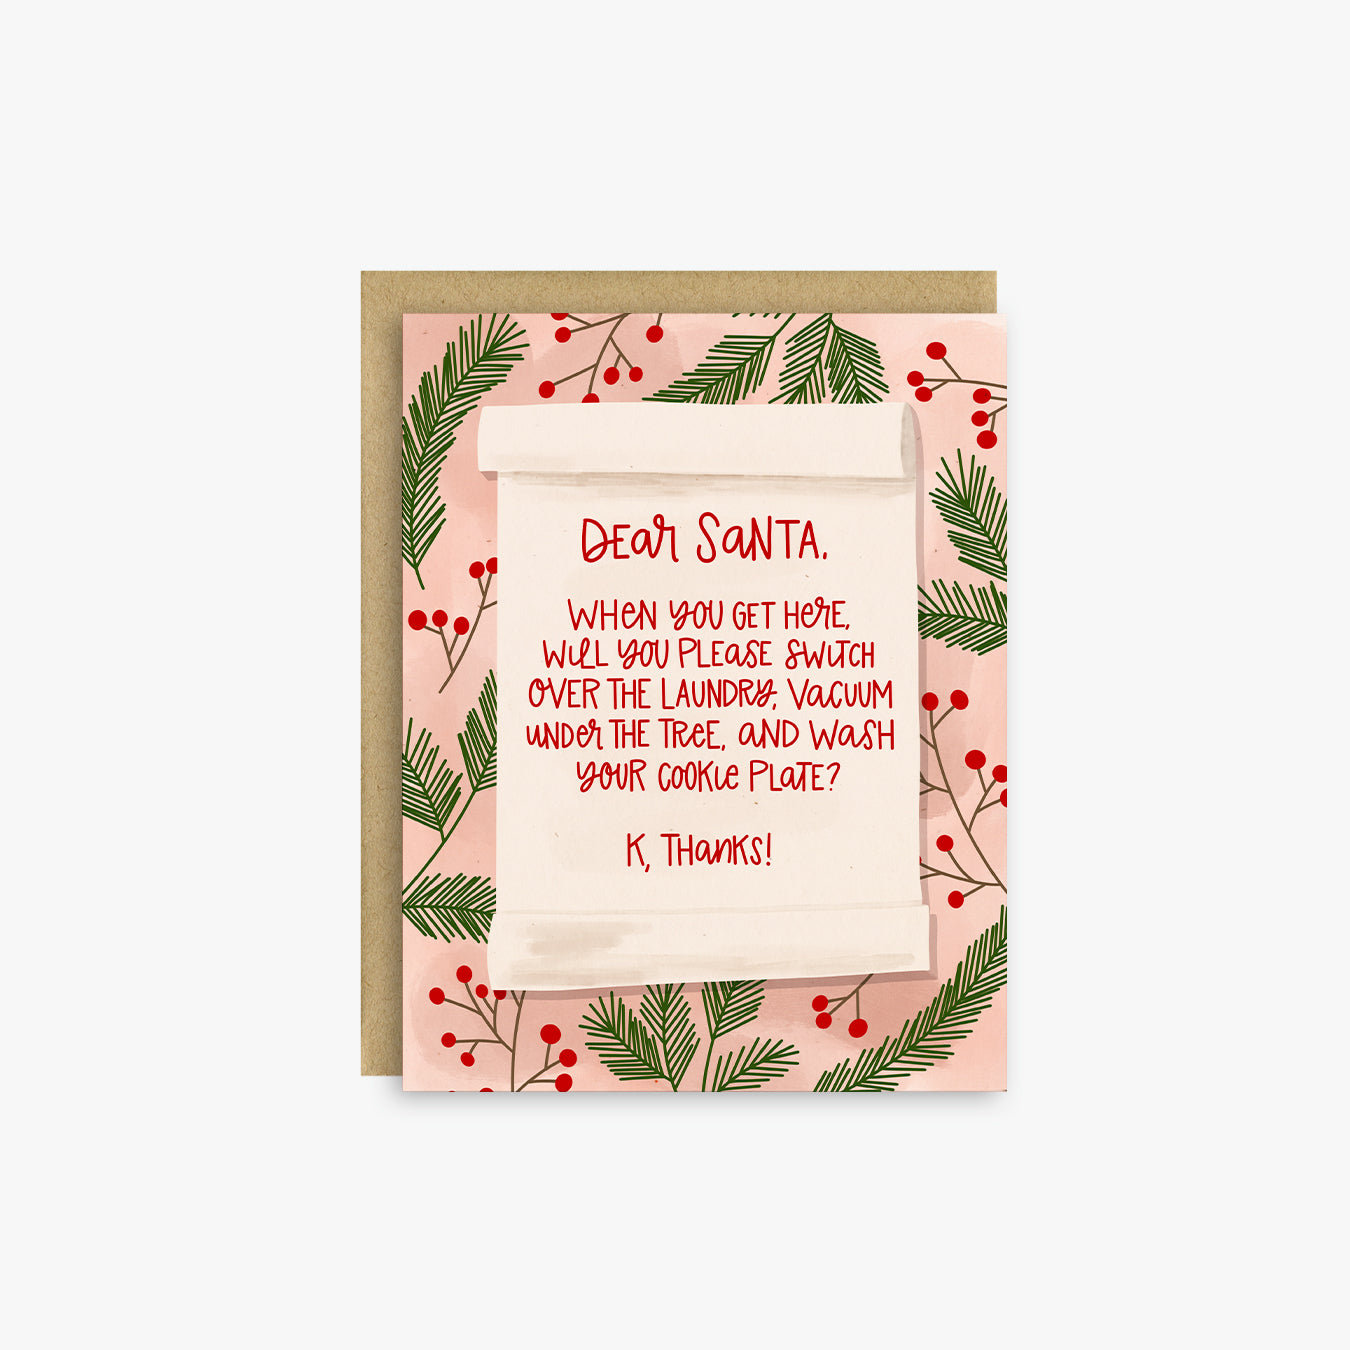 Dear Santa Funny Christmas Card